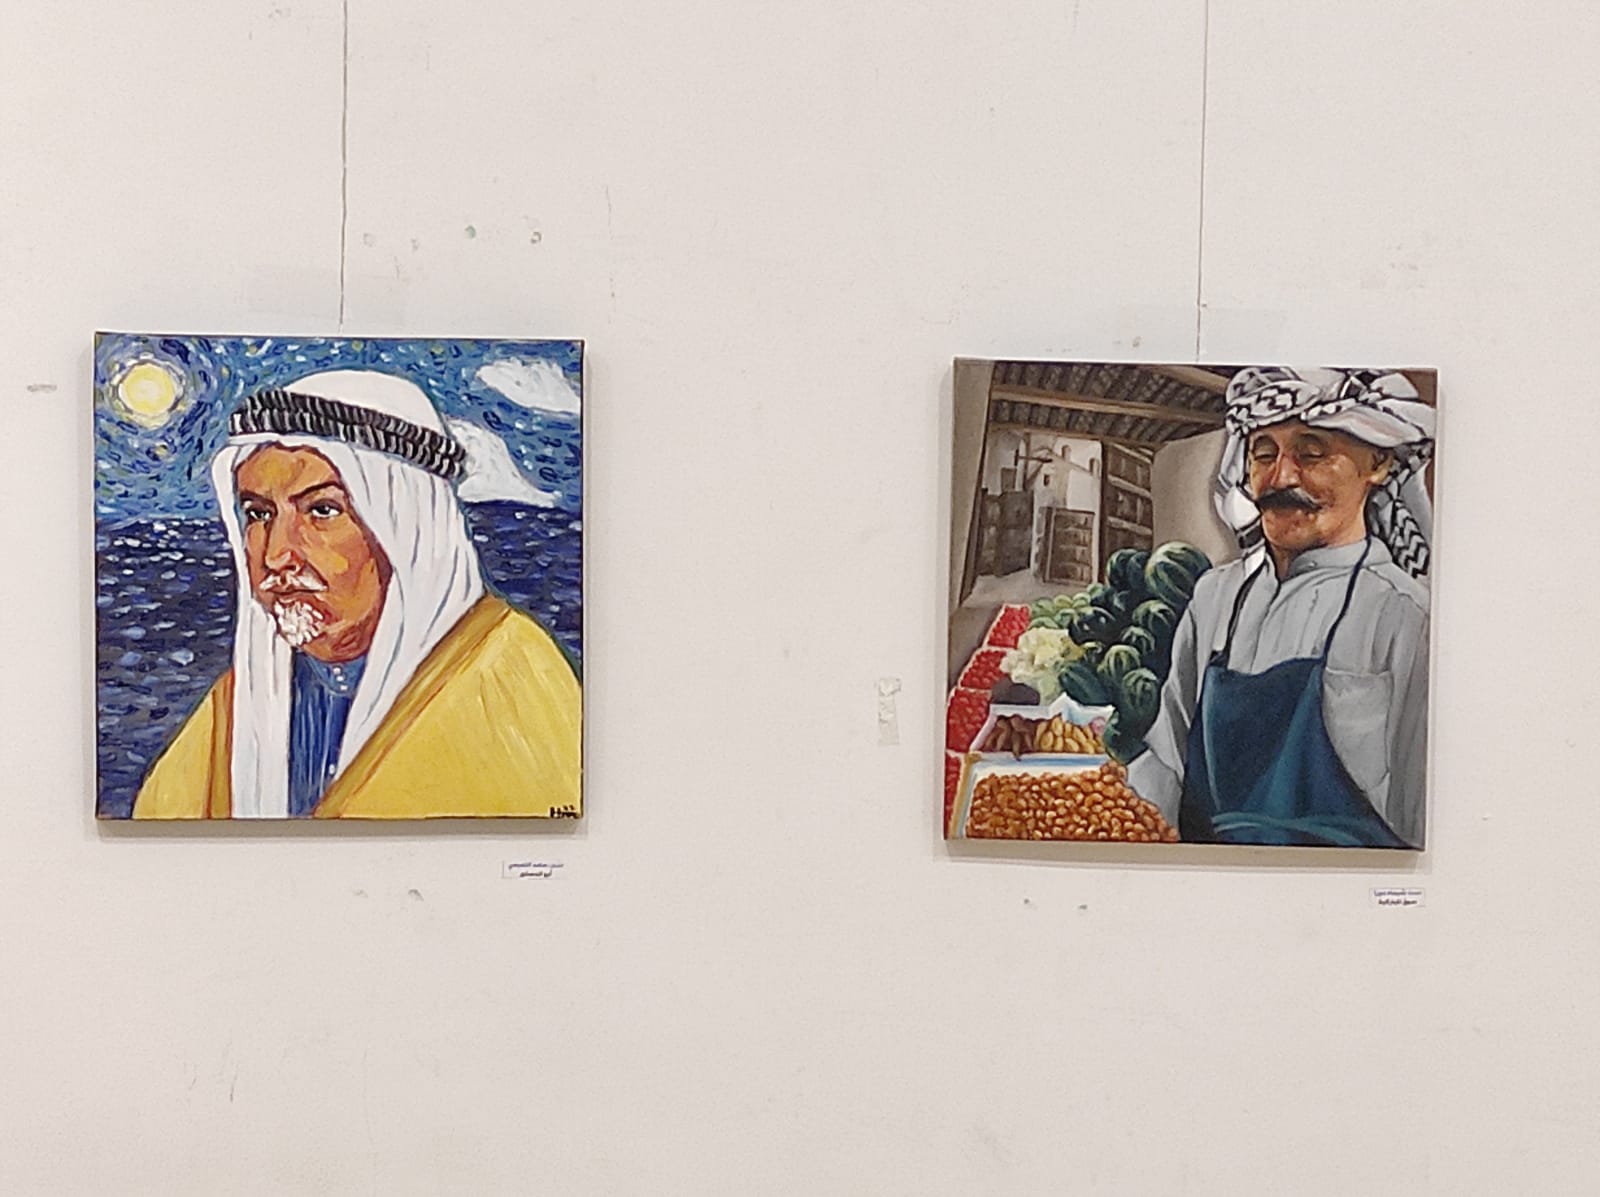 احدى اللوحات بمعرض الكويت في قلب القاهرة للوحات الفنية